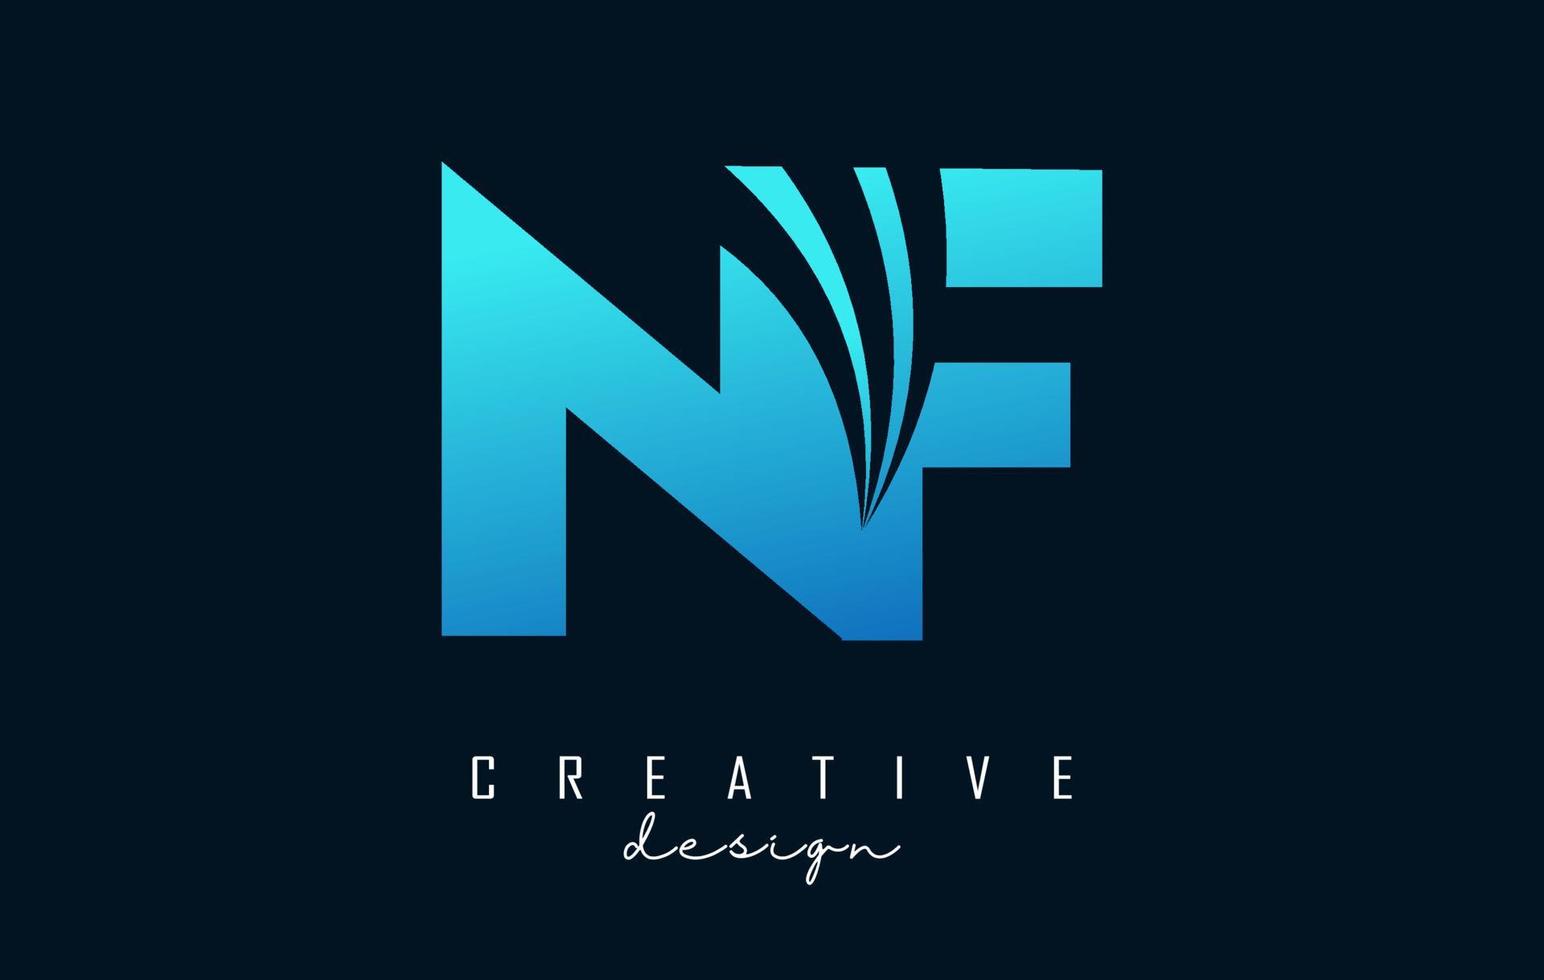 lettere blu creative logo nf nf con linee guida e concept design stradale. lettere con disegno geometrico. vettore